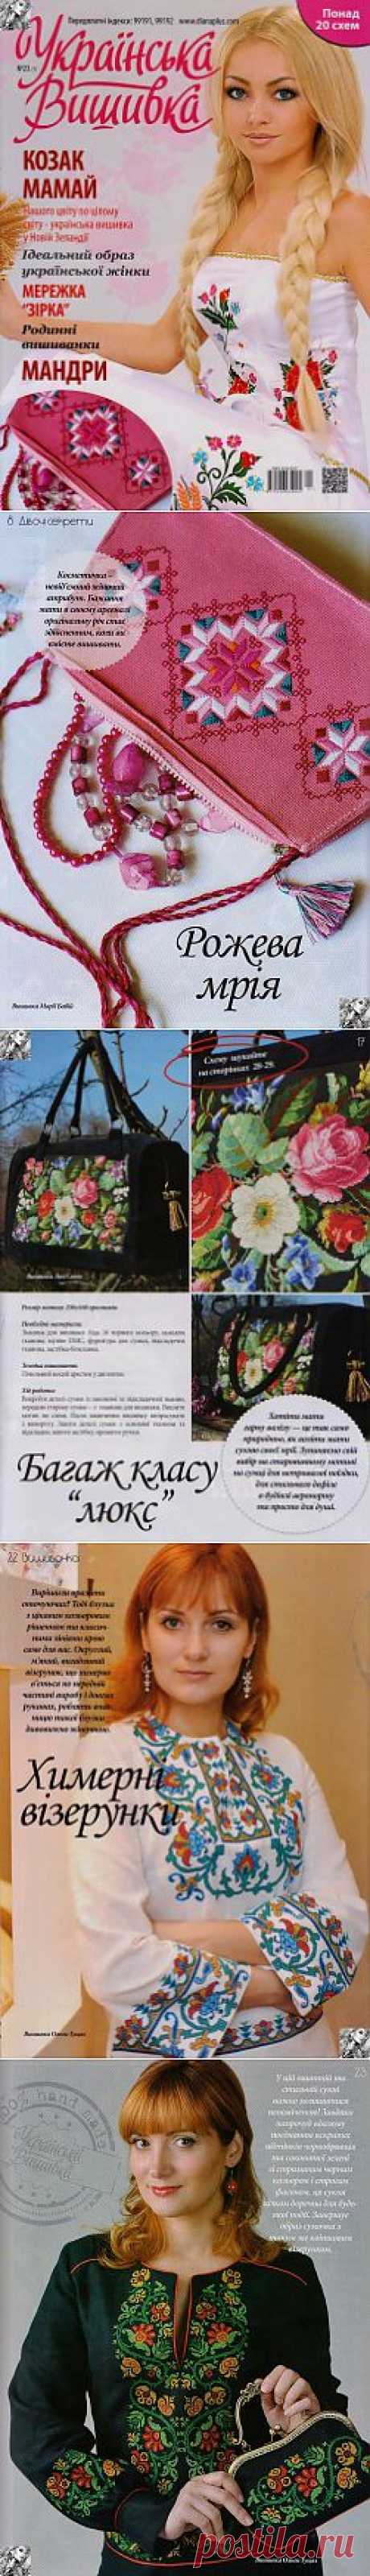 Українська вишивка №23(1) 2014.